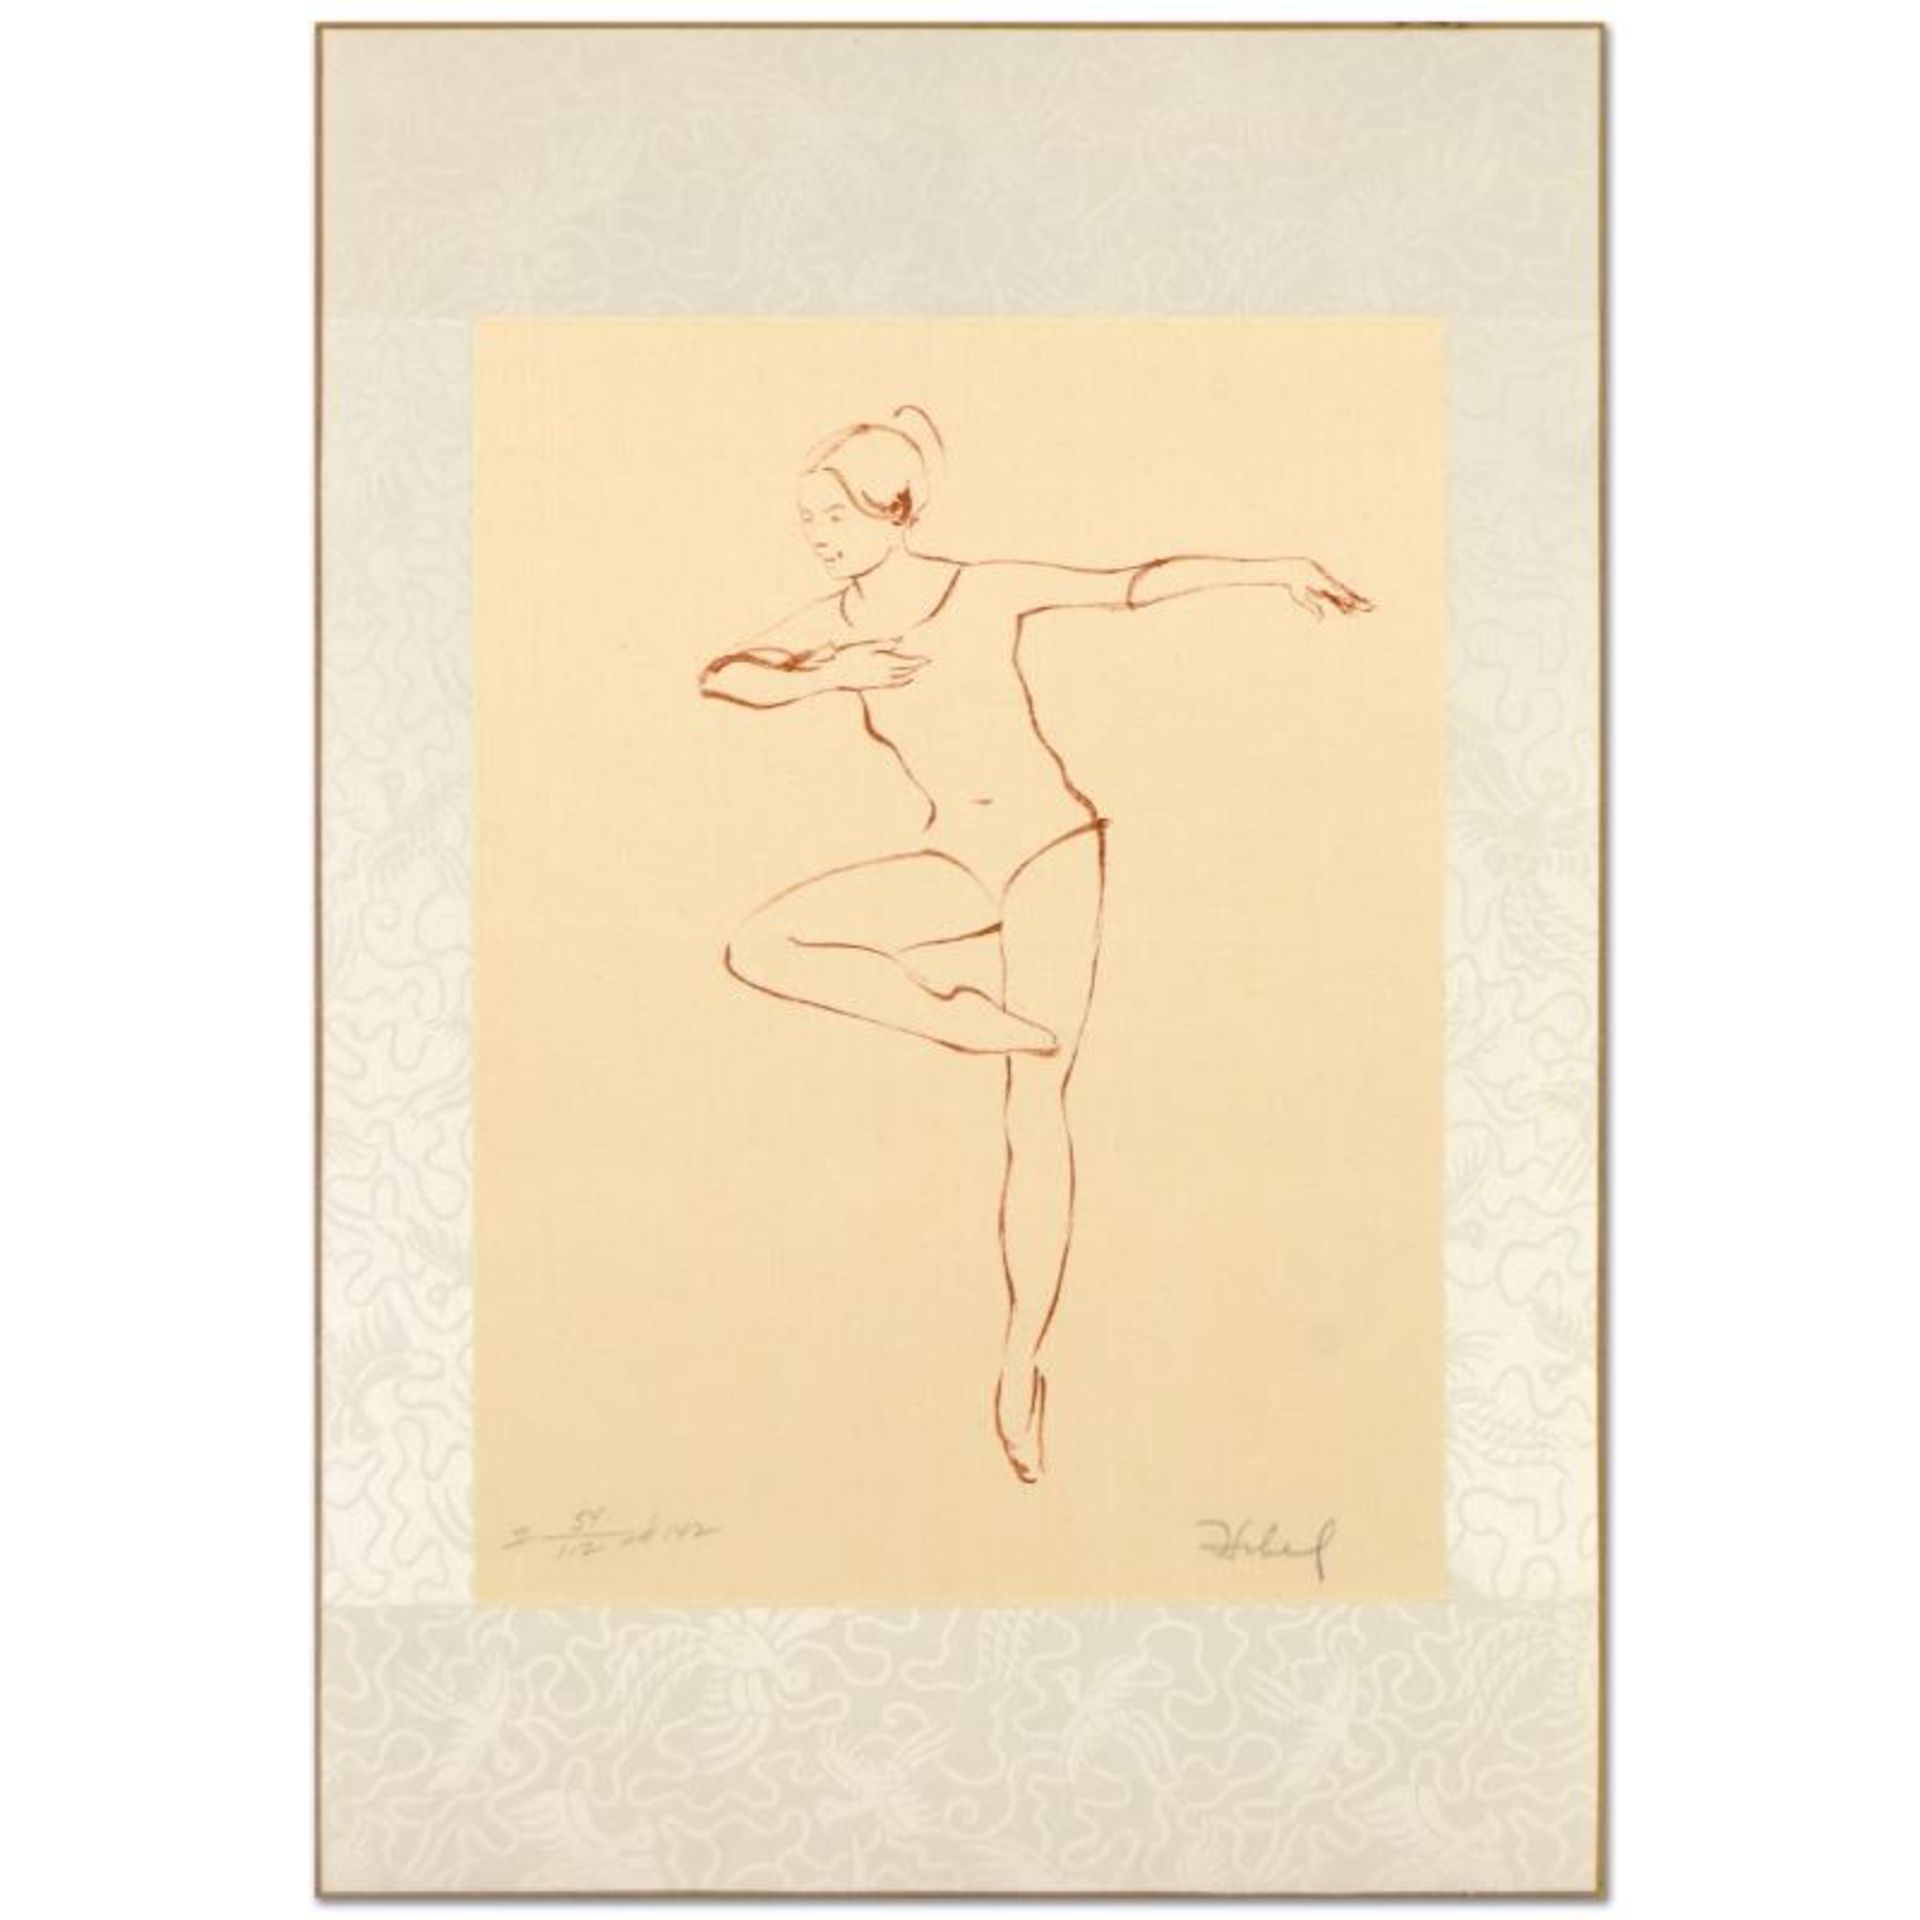 Pirouette by Hibel (1917-2014)